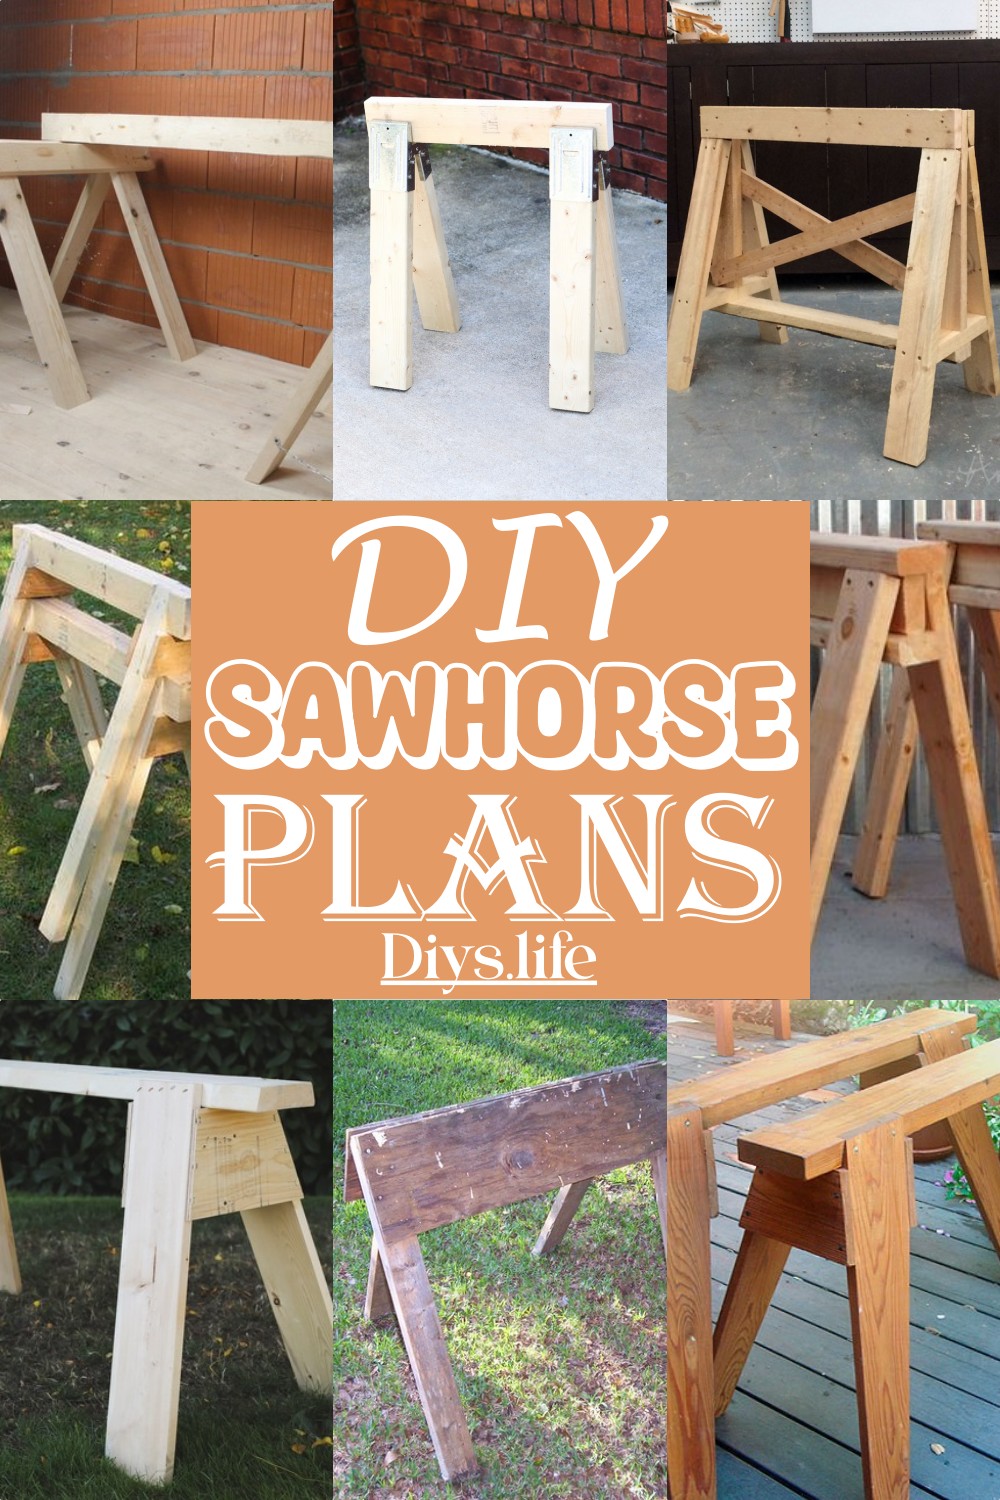 DIY Sawhorse Plans